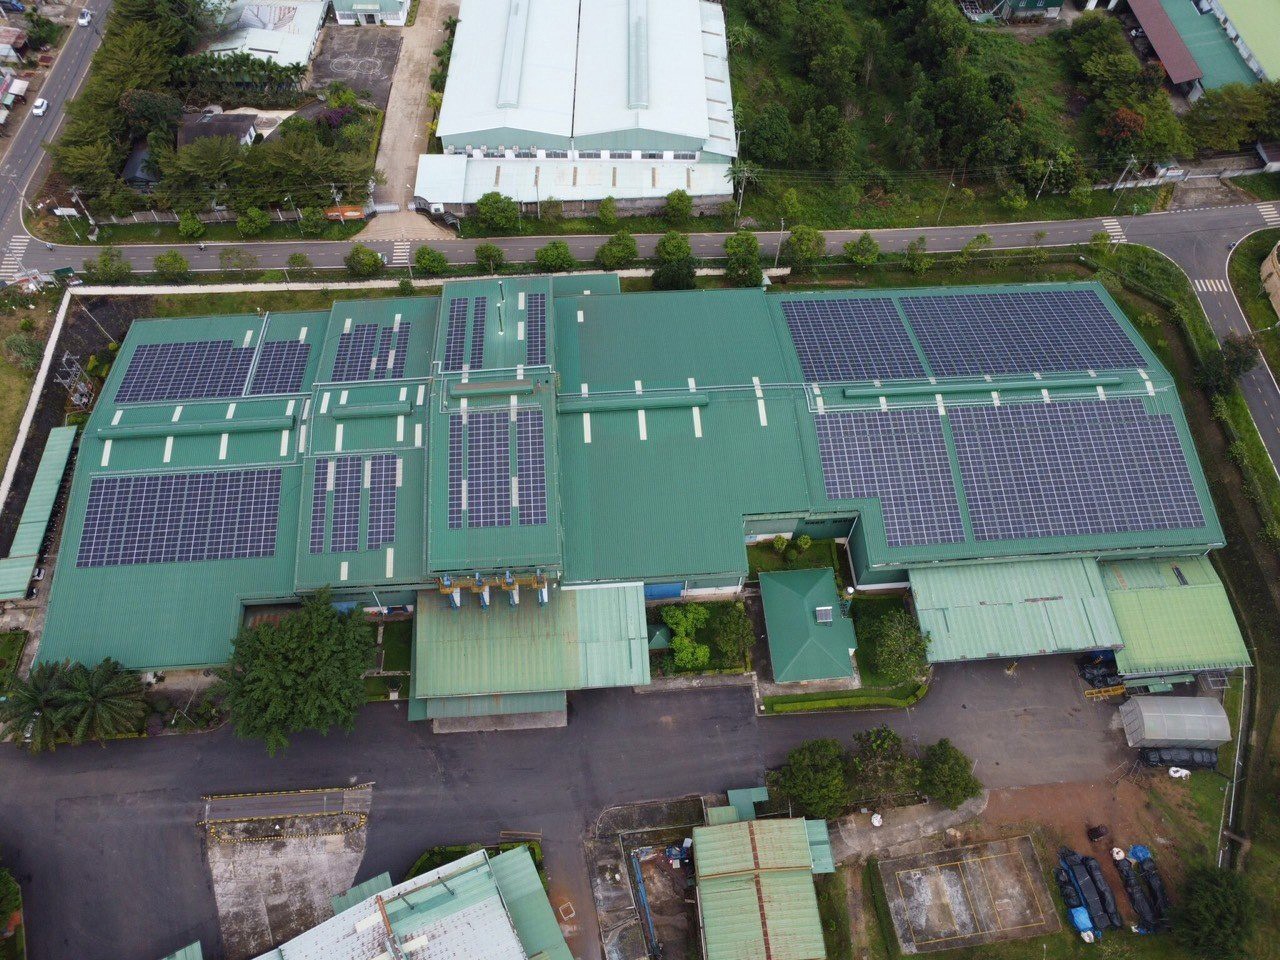 Công ty Sợi Đà Lạt lắp đặt hệ thống điện mặt trời mái nhà, mỗi năm cung cấp khoảng trên 2 triệu kWh, giúp giảm nhiều chi phí cho doanh nghiệp.